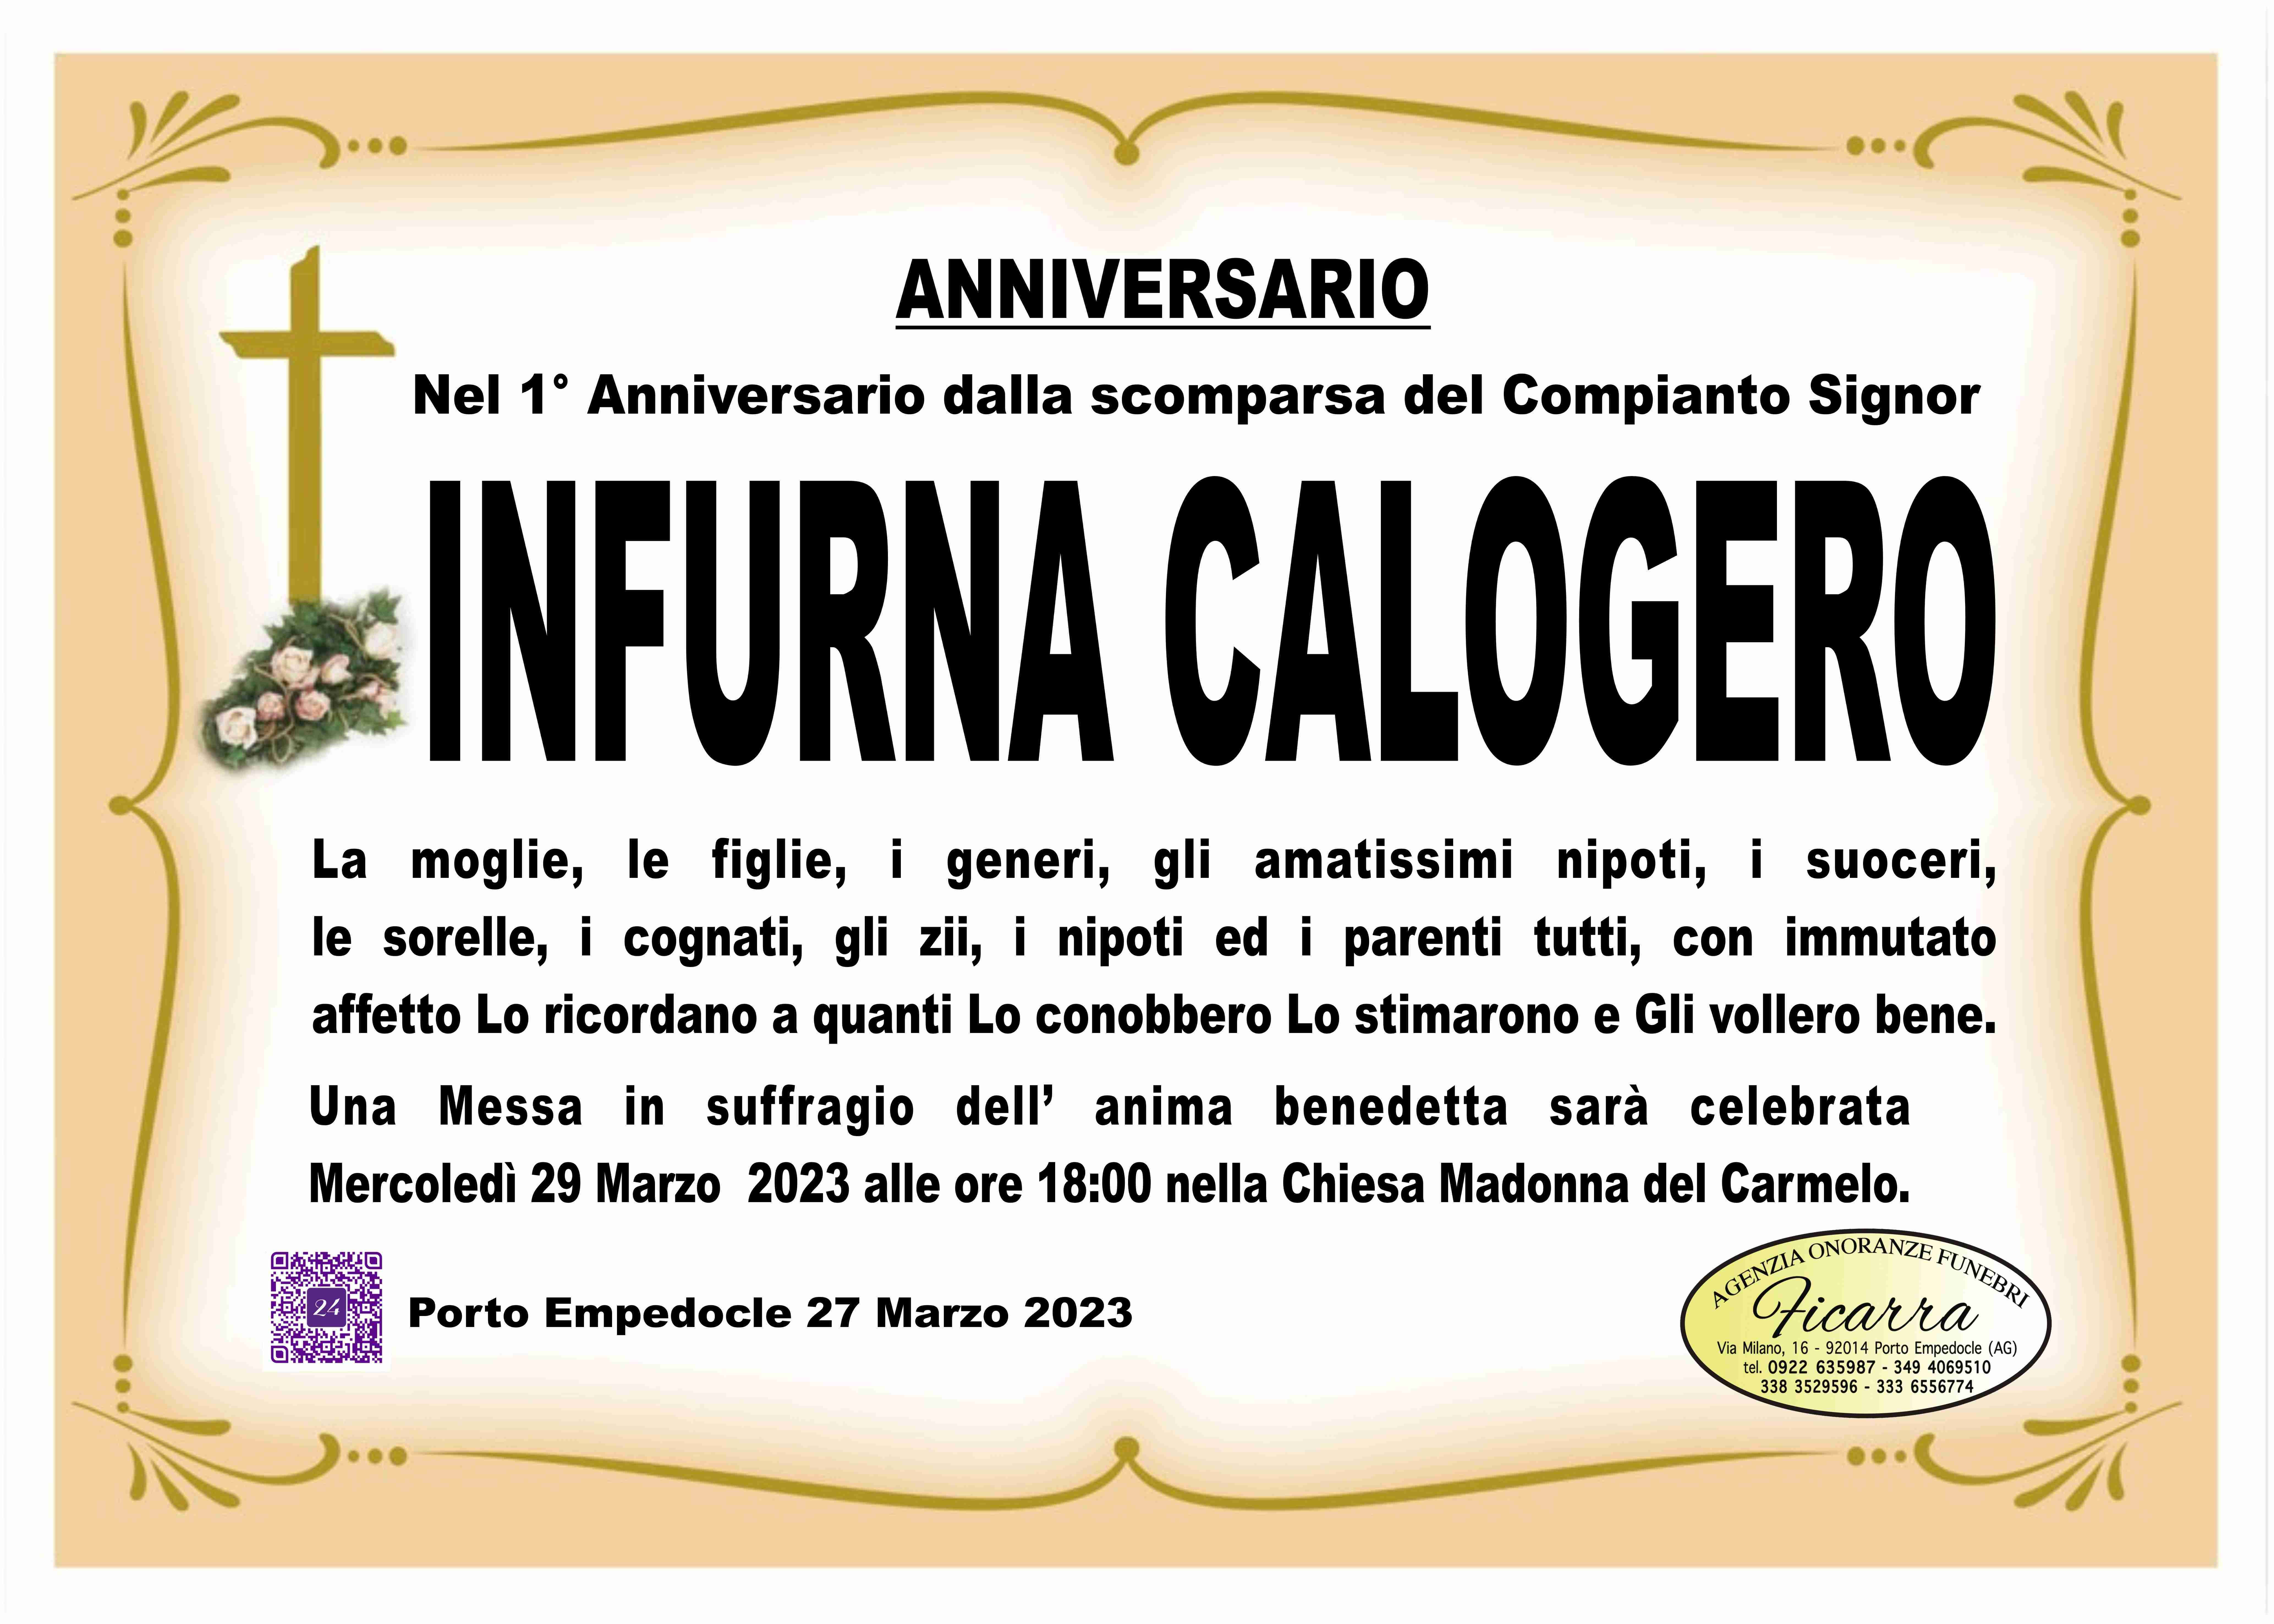 Calogero Infurna